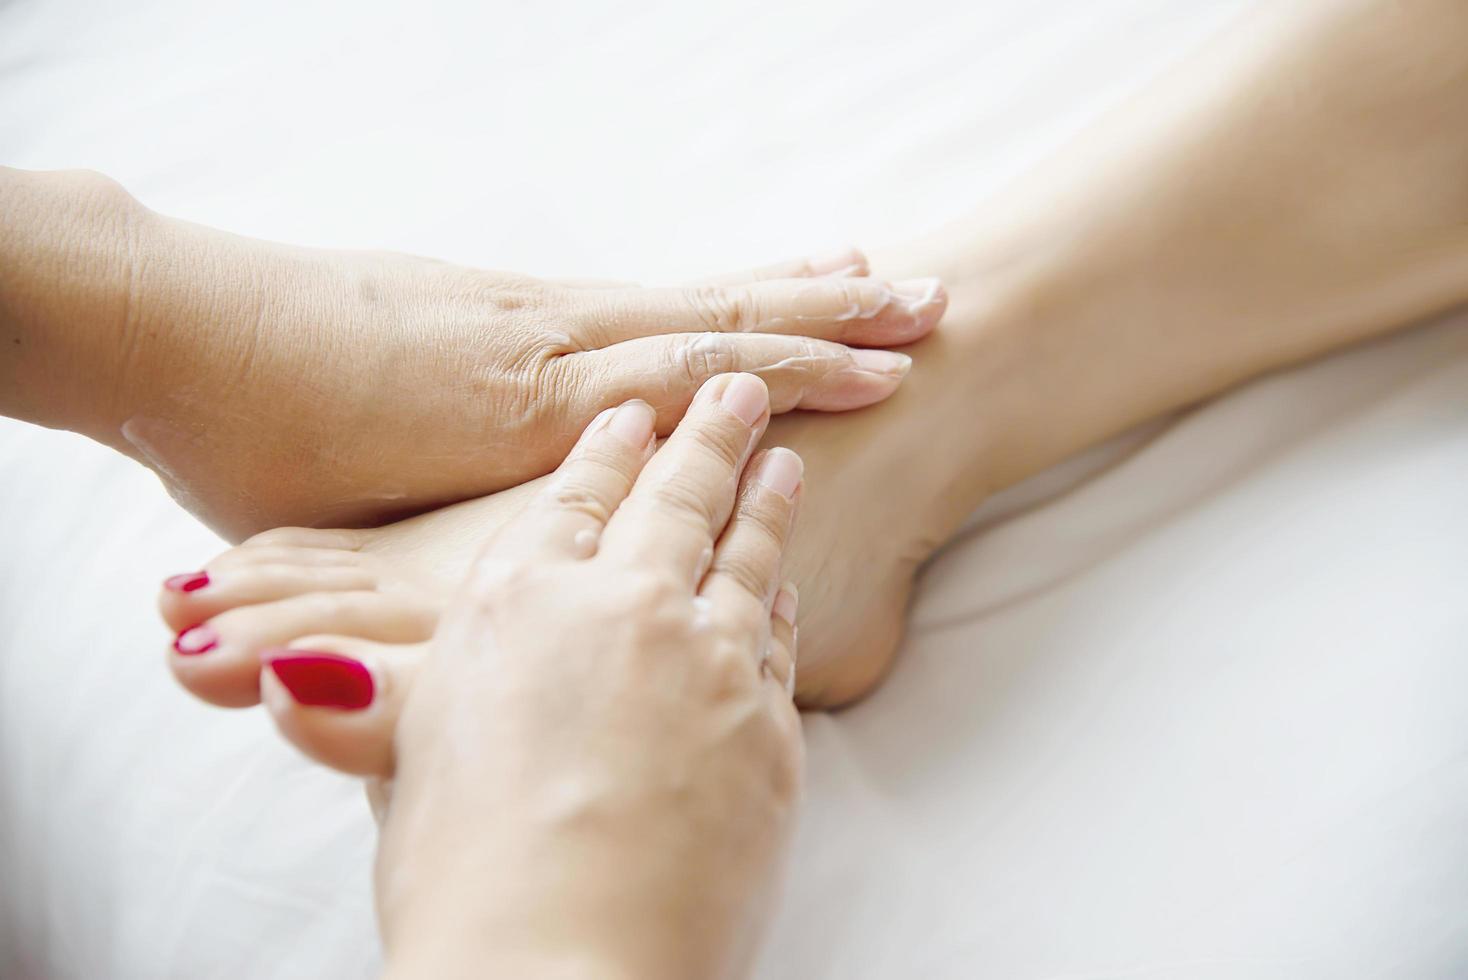 mujer que recibe un servicio de masaje de pies de masajista cerca de la mano y el pie - relájese en el concepto de servicio de terapia de masaje de pies foto